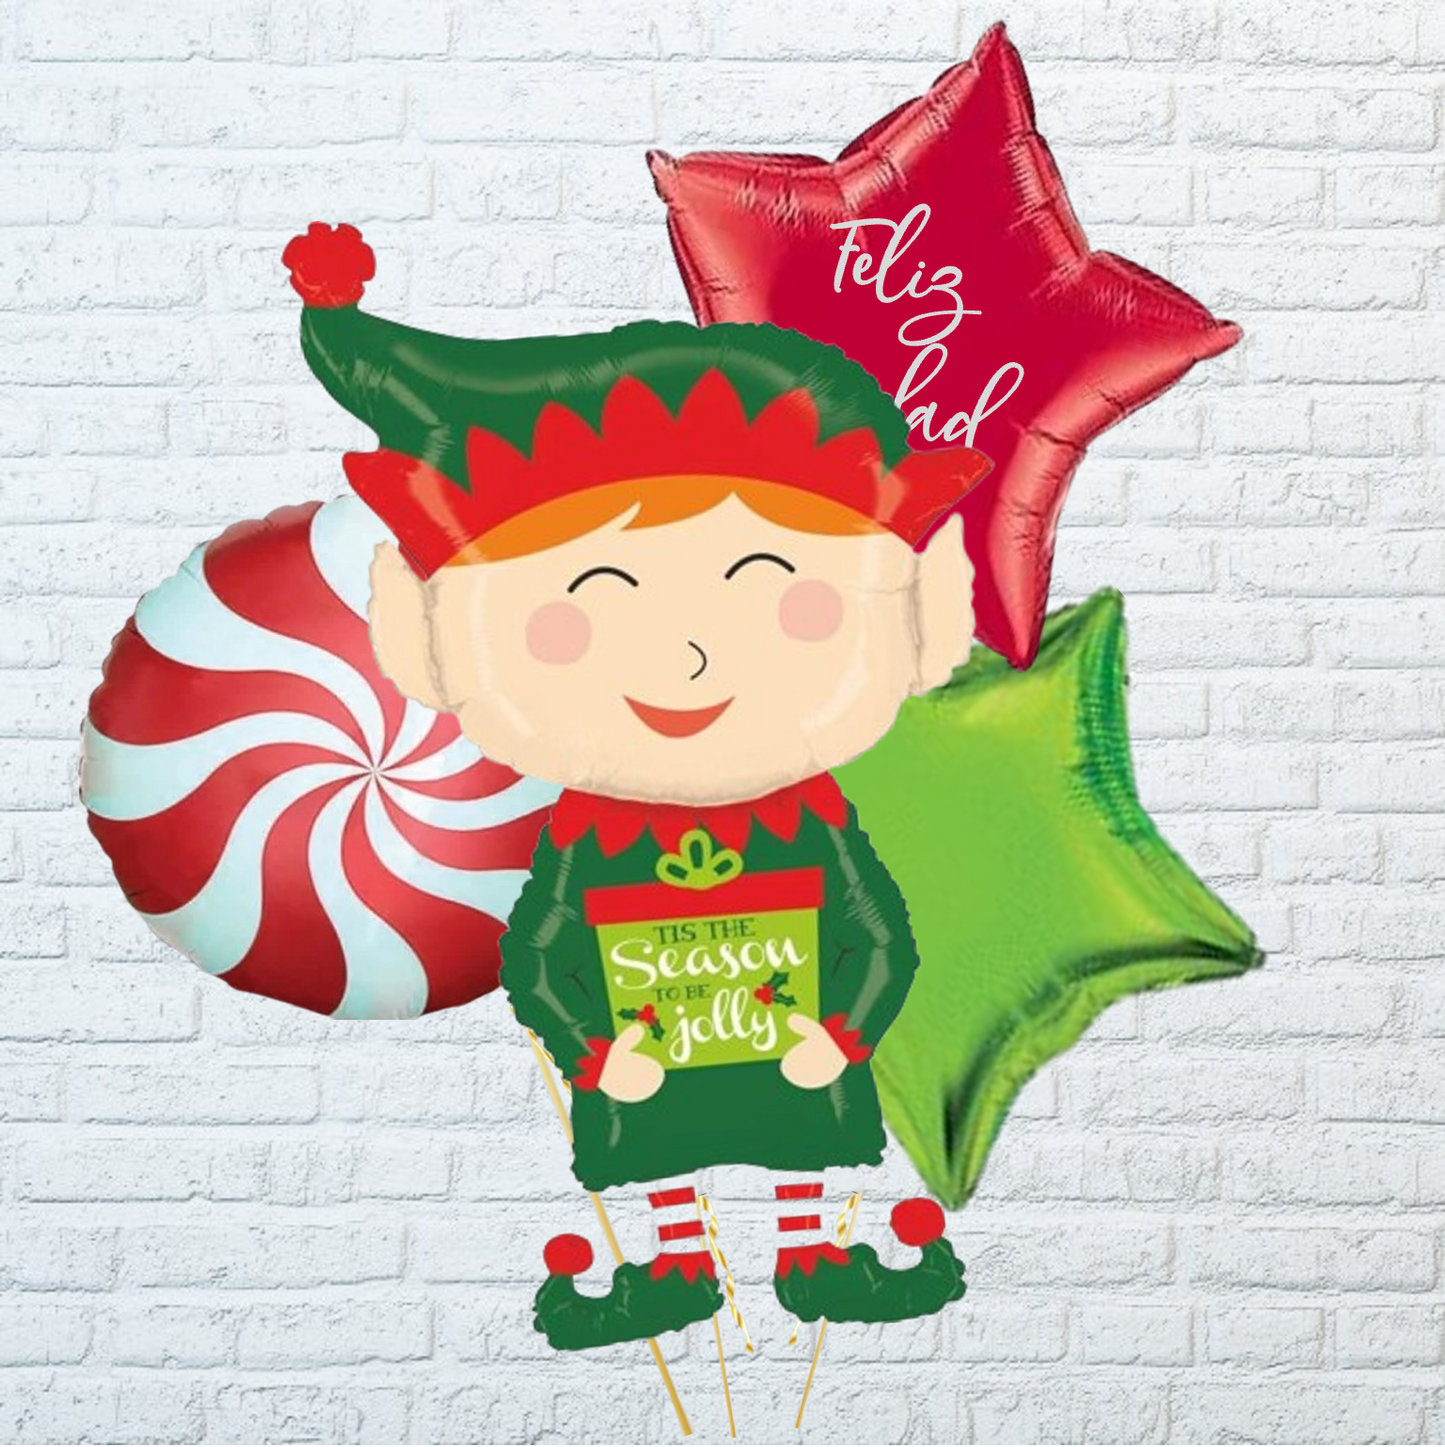 Globo elfo inflado con helio para regalar en estas navidades